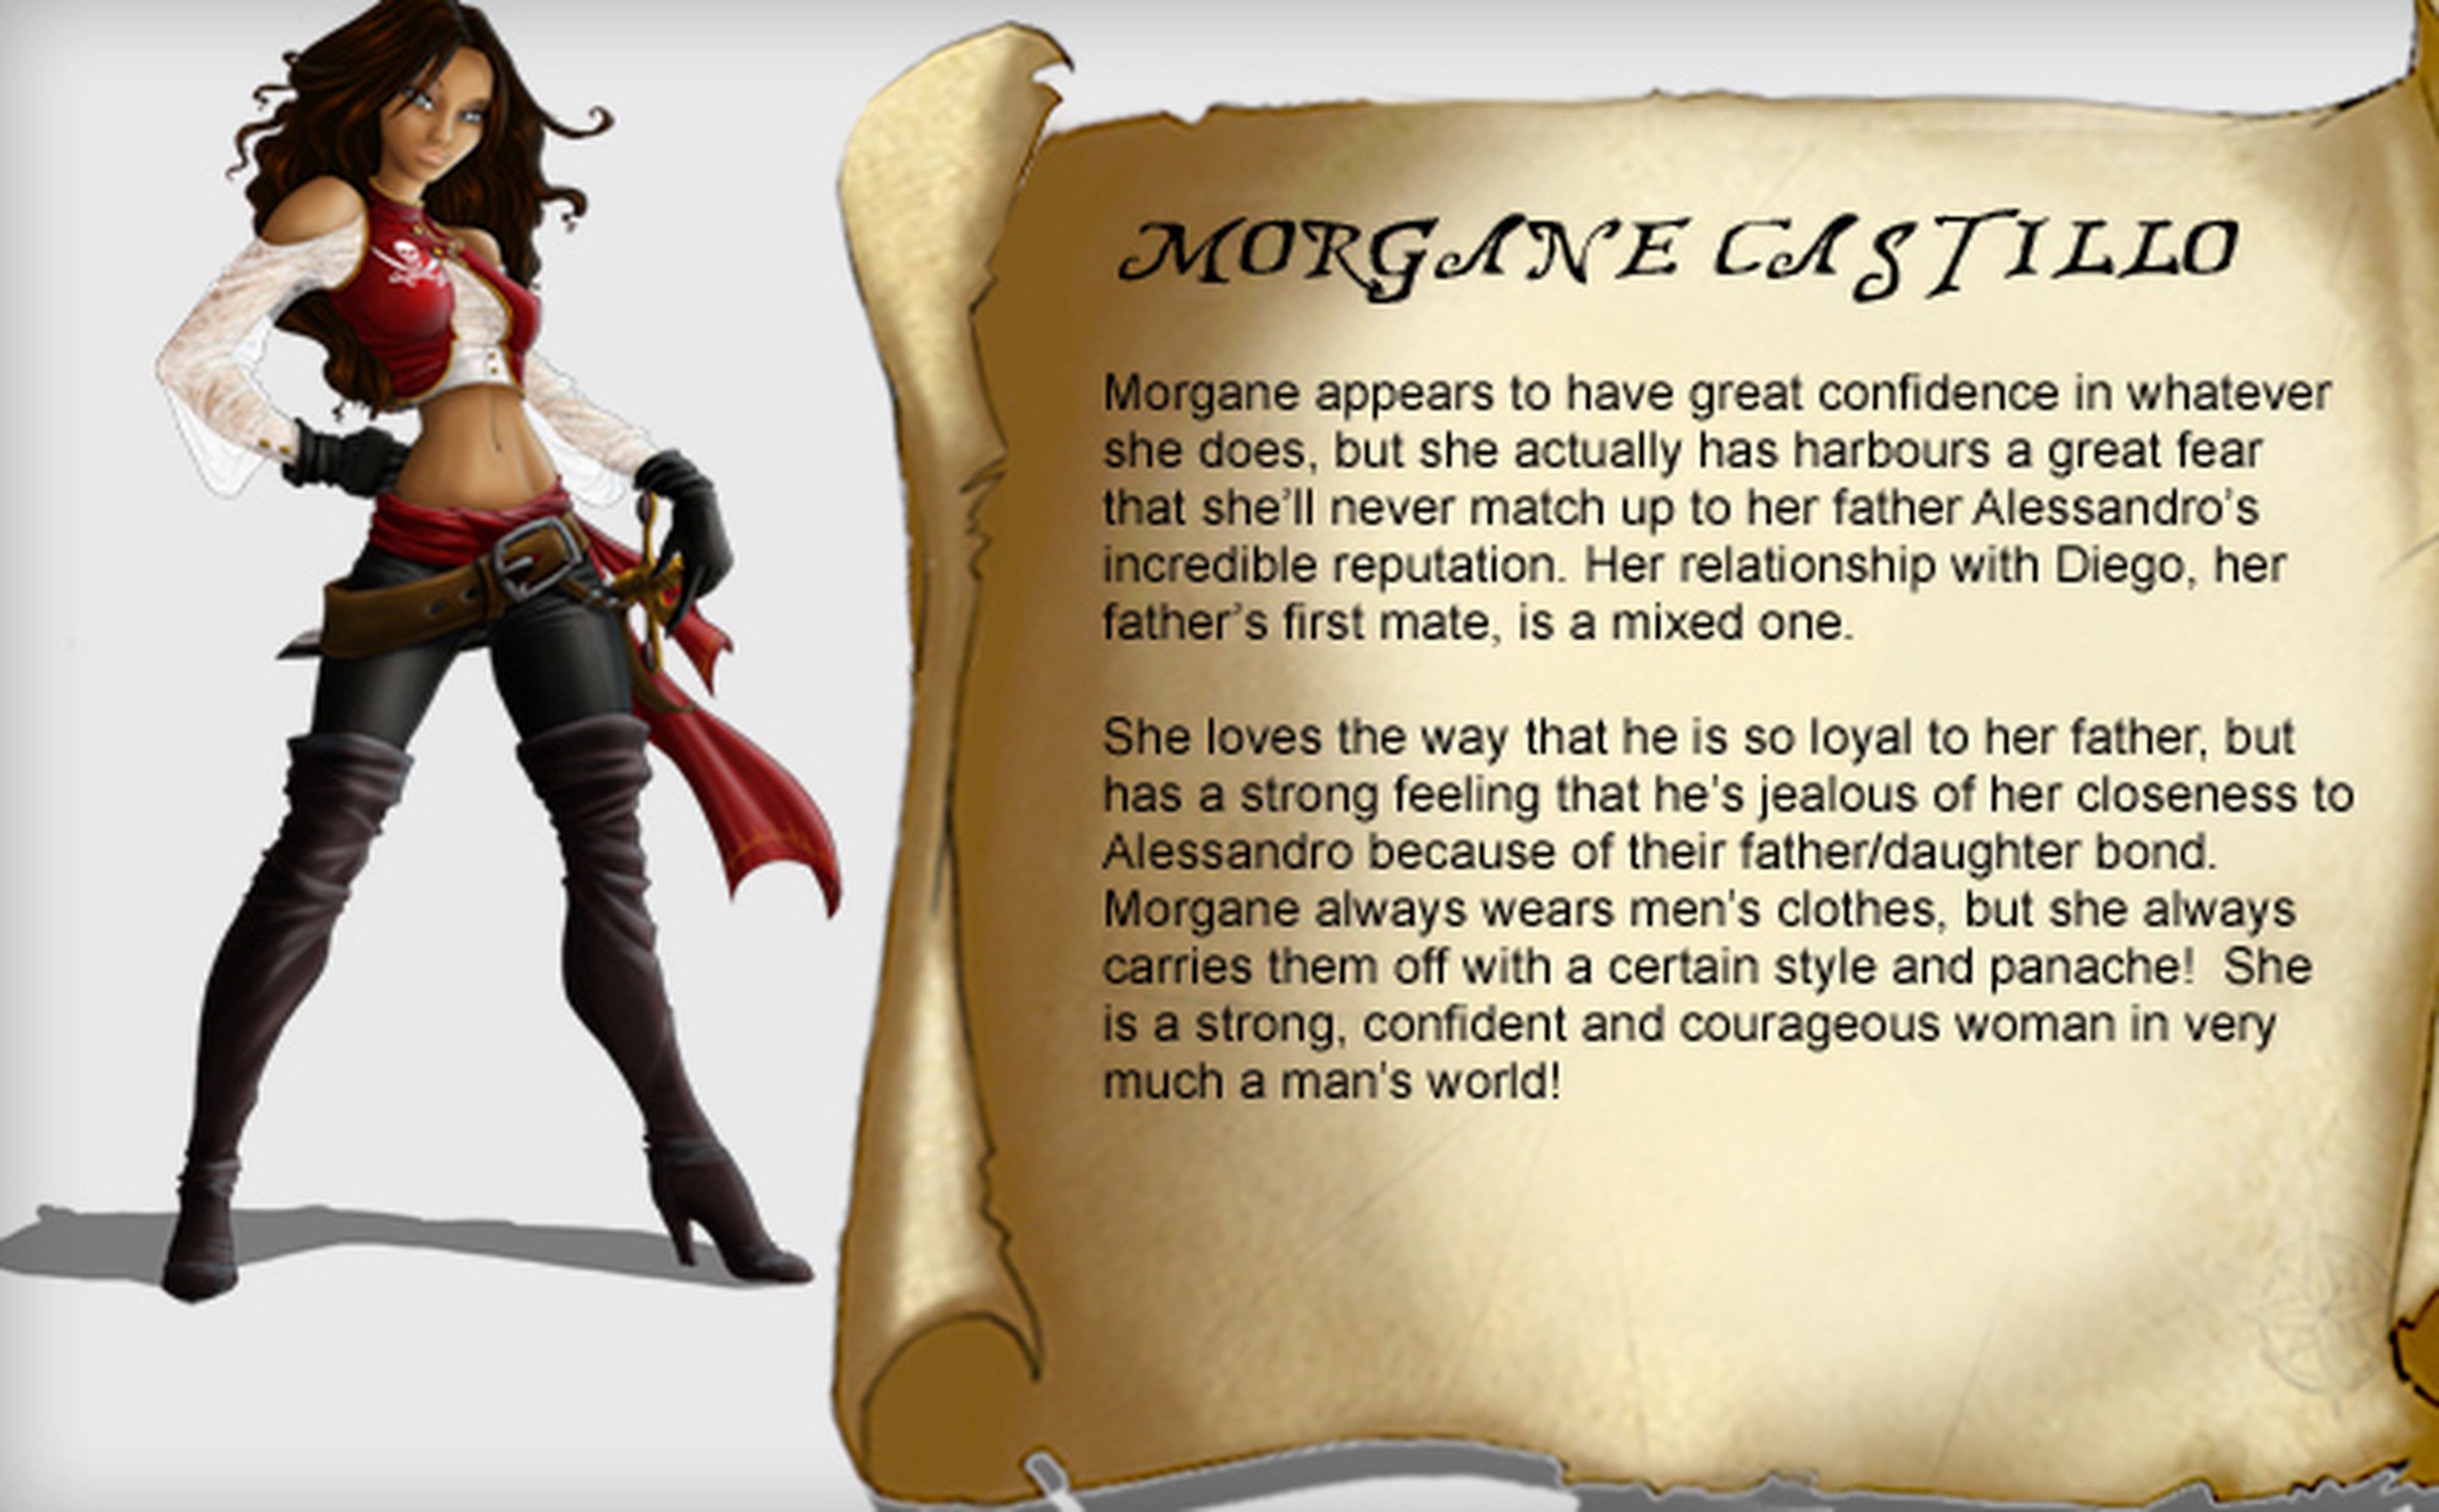 Captain Morgane, una nueva aventura de piratas